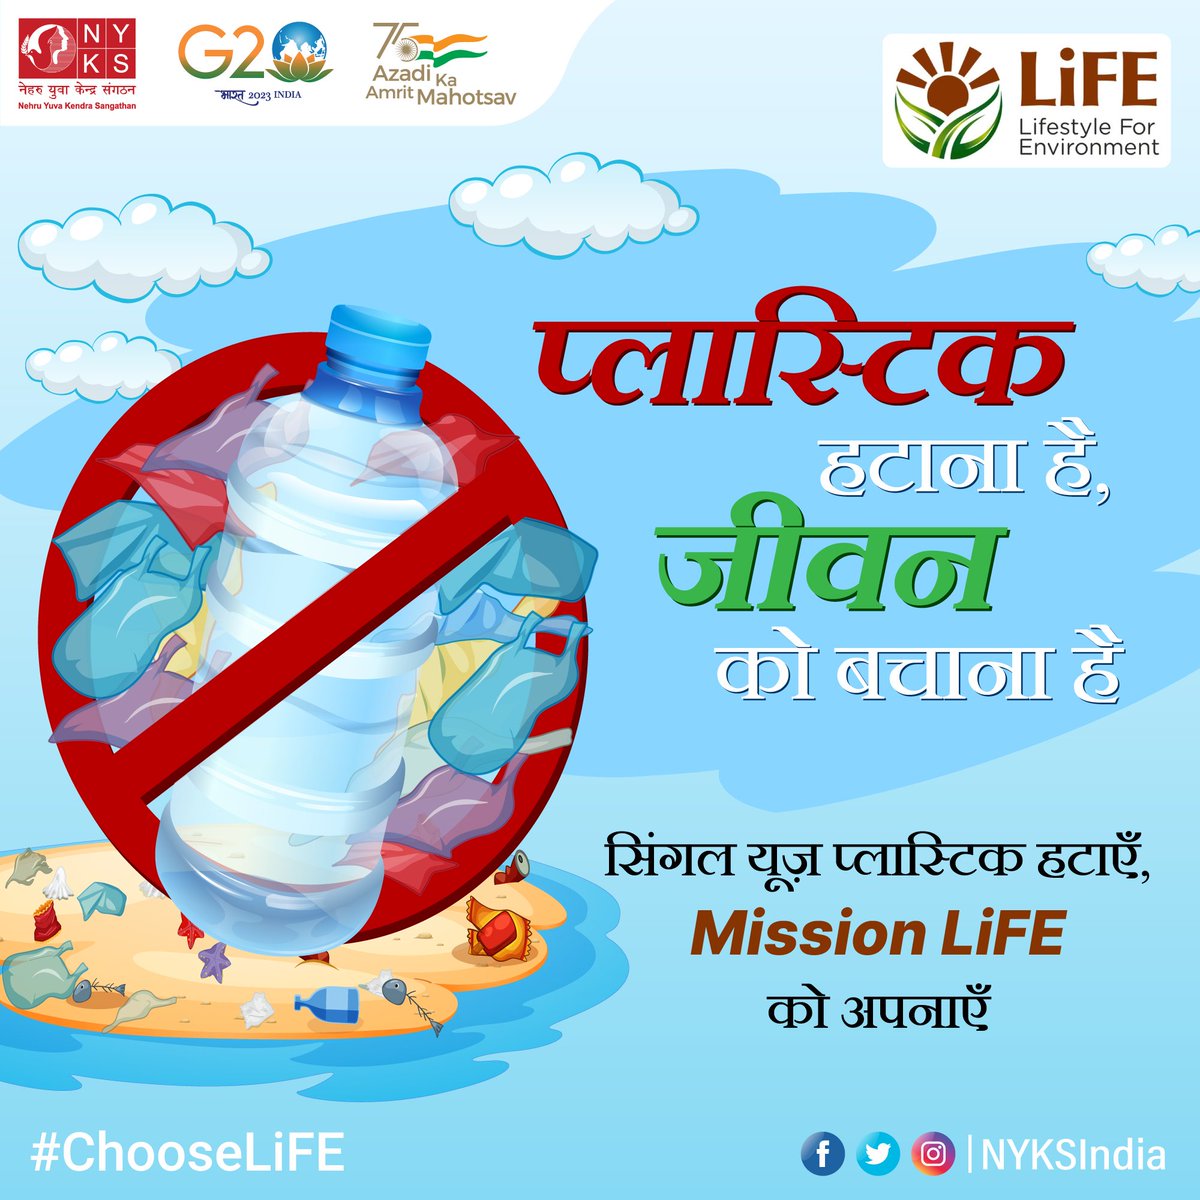 पर्यावरण को बचाने के लिए सिंगल यूज़ प्लास्टिक के इस्तेमाल पर लगाए रोक, Mission LiFE की पहल में दें सहयोग।

#ChooseLiFE #NyksIndia #SayNoToPlastict #NoMorePlastic #CleanIndia